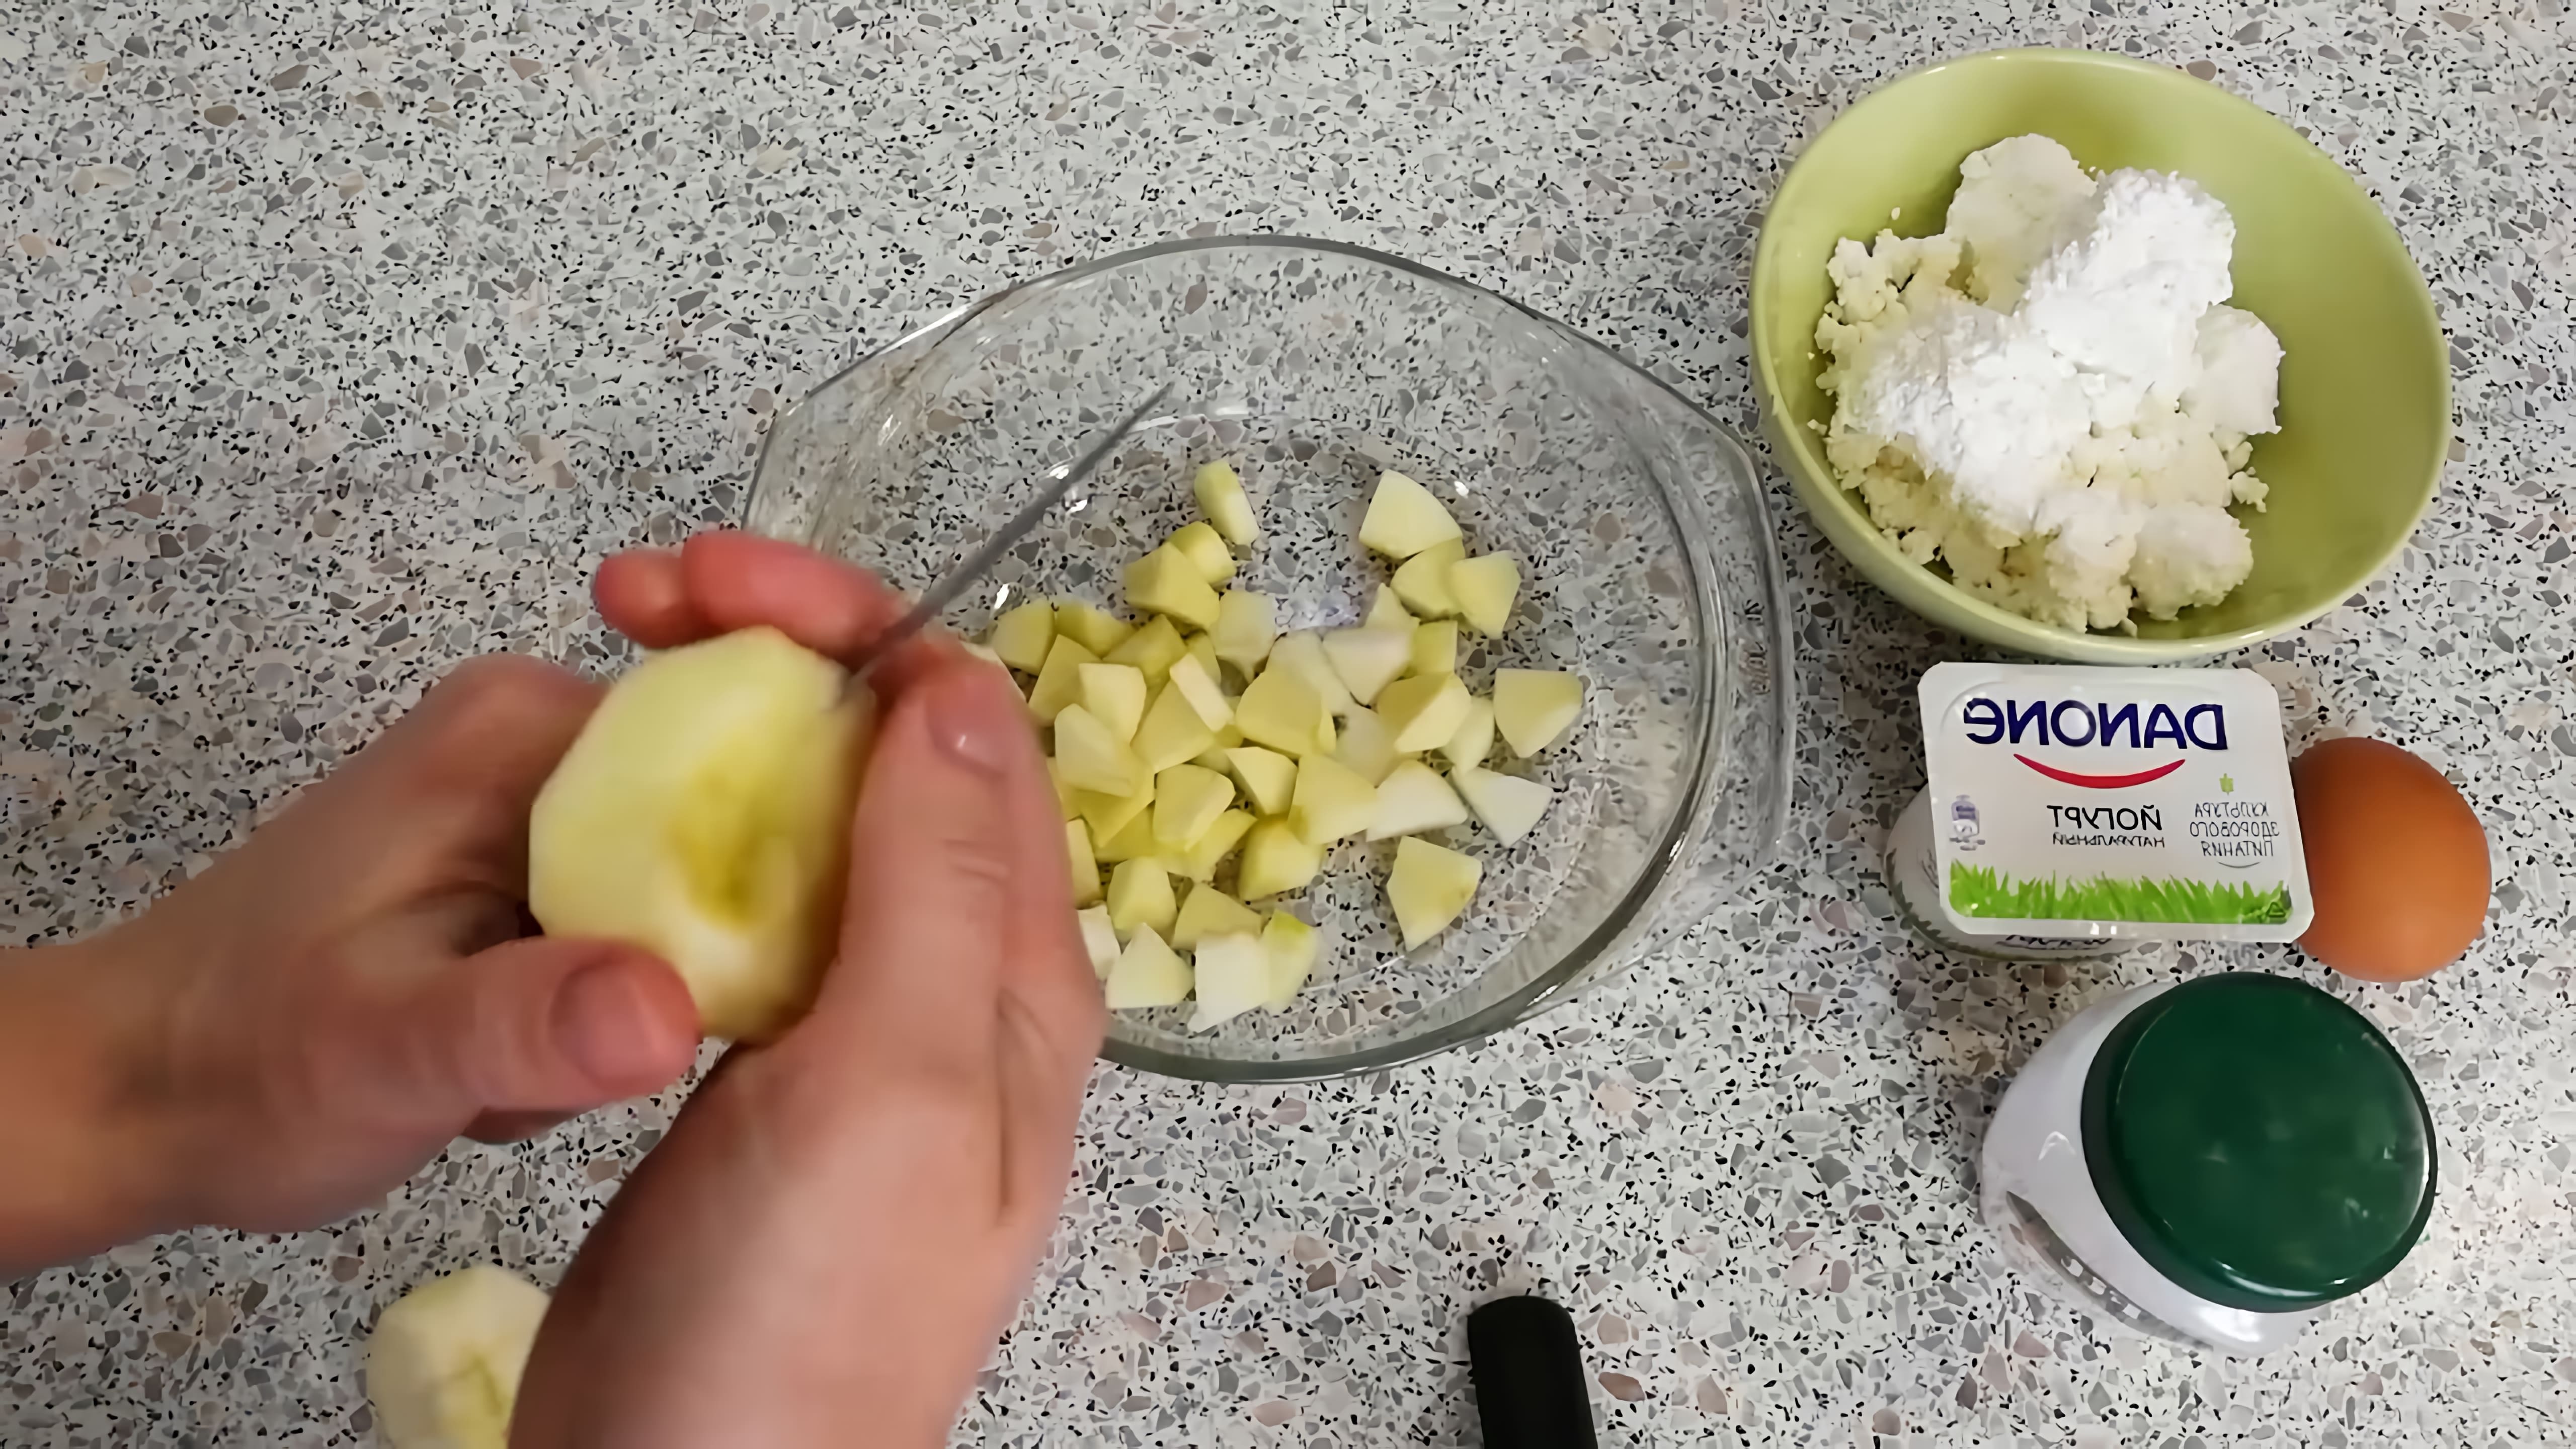 В этом видео демонстрируется рецепт фруктово-творожной запеканки по системе минус 60